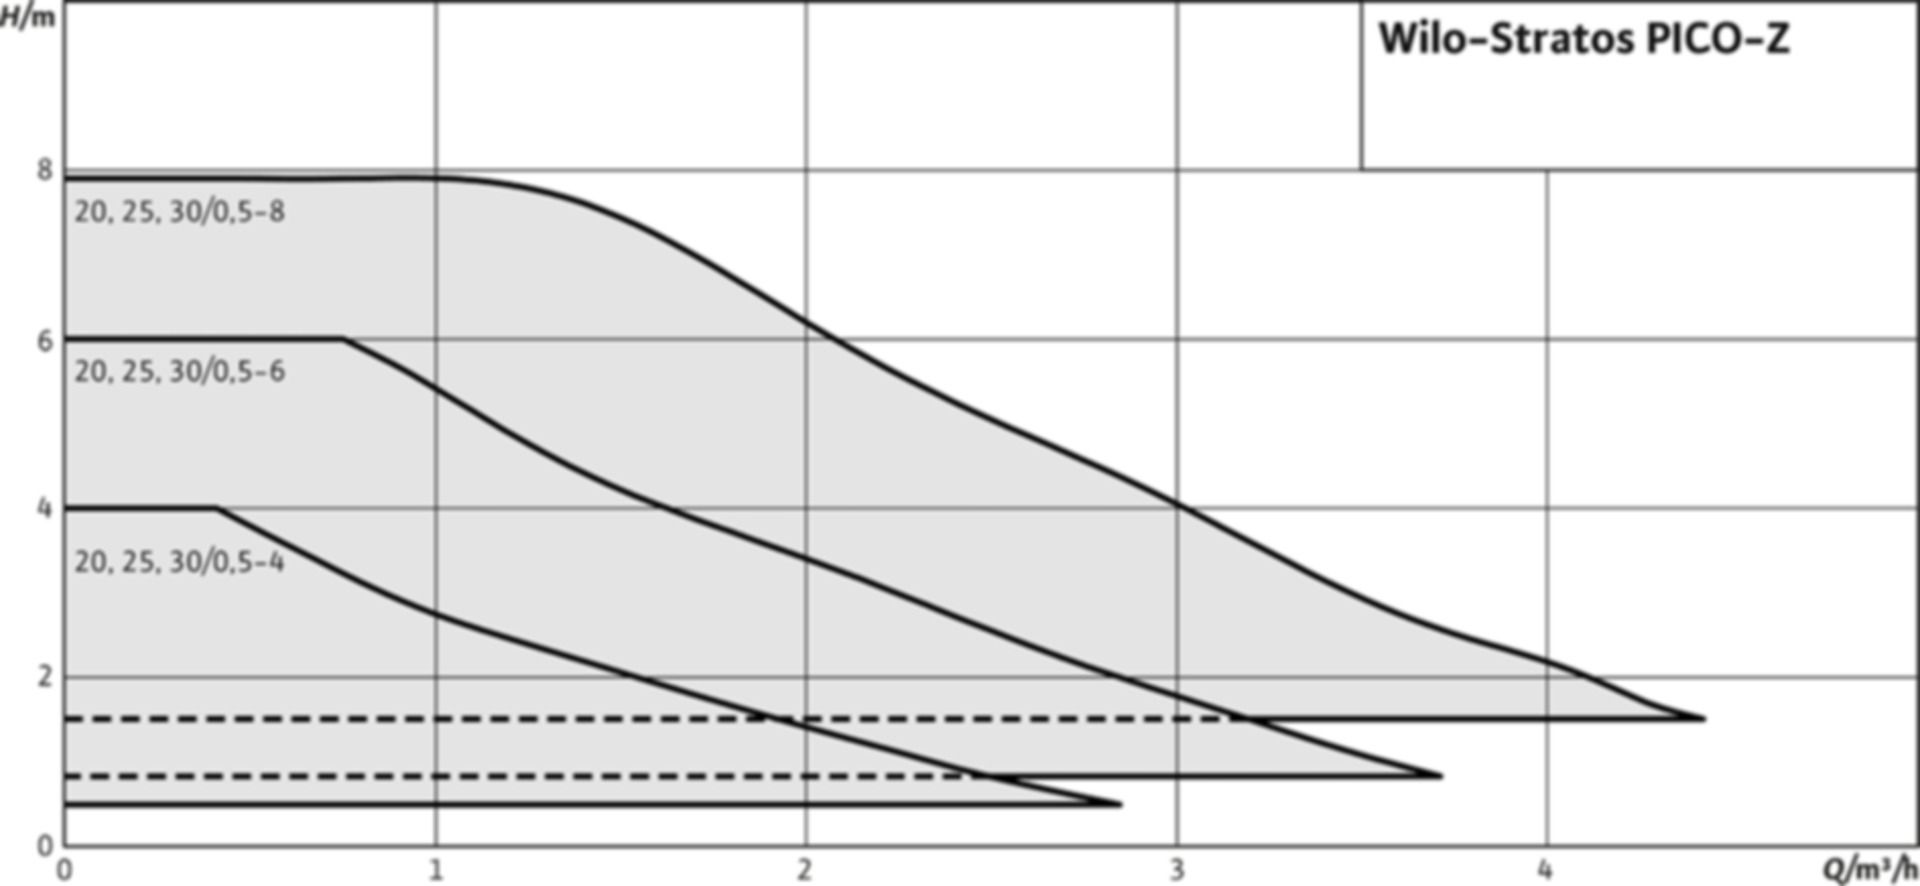 Brauchwasserpumpe Stratos PICO-Z 20/0.5-4 G 11/4" PN 10 150 mm 1x230V - EMB/Wilo Pumpen